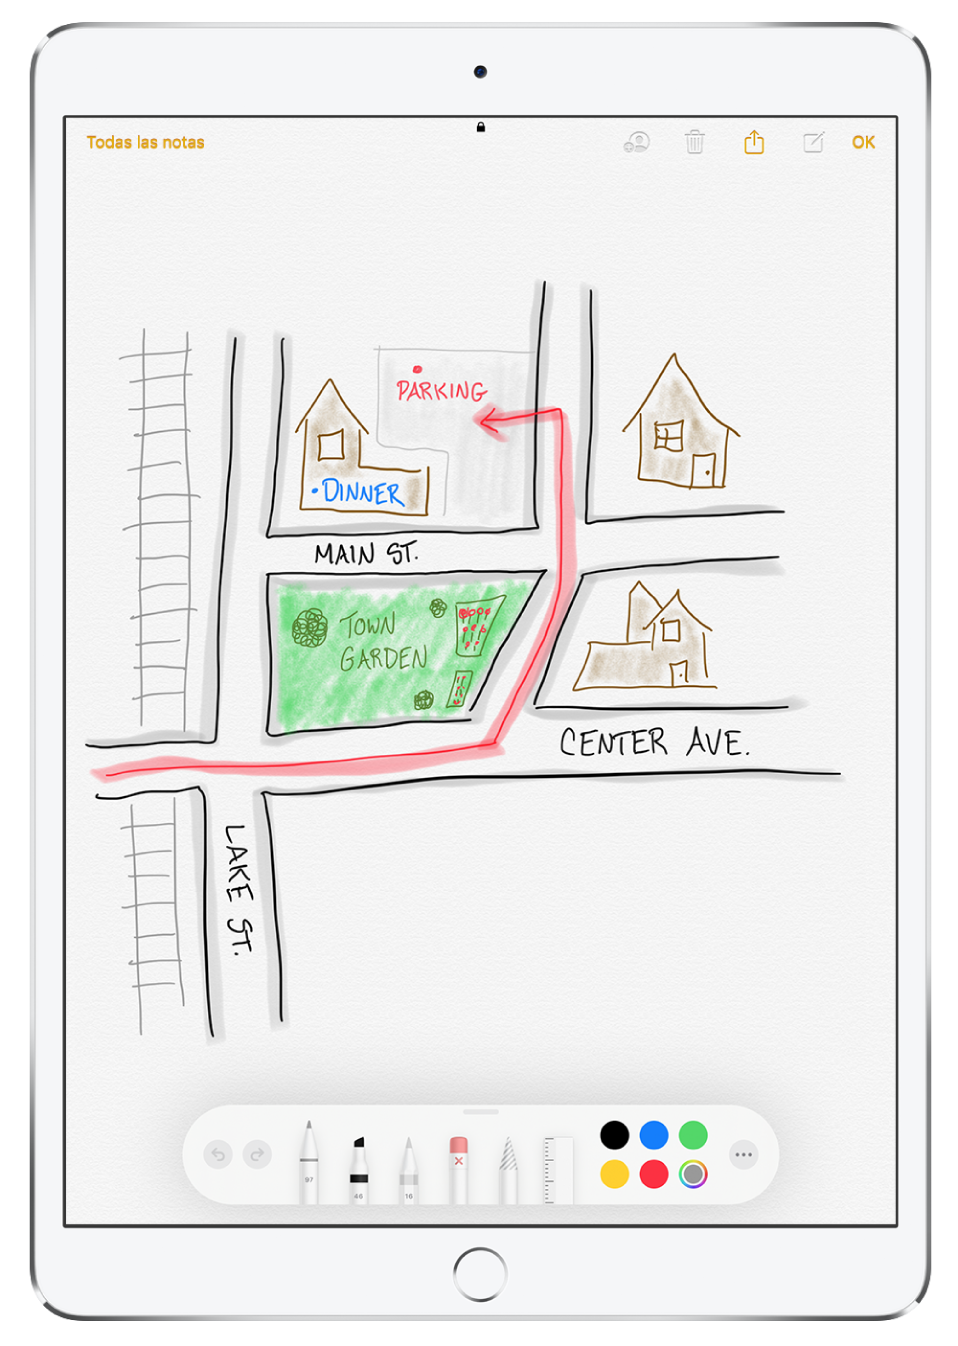 Dibujo de un barrio dentro de una nota de la app Notas. El dibujo contiene los nombres de las calles y una flecha roja que indica dónde hay un aparcamiento disponible. En el borde inferior de la pantalla está la barra de herramientas de marcación con una herramienta de escritura y un color personalizado seleccionado.